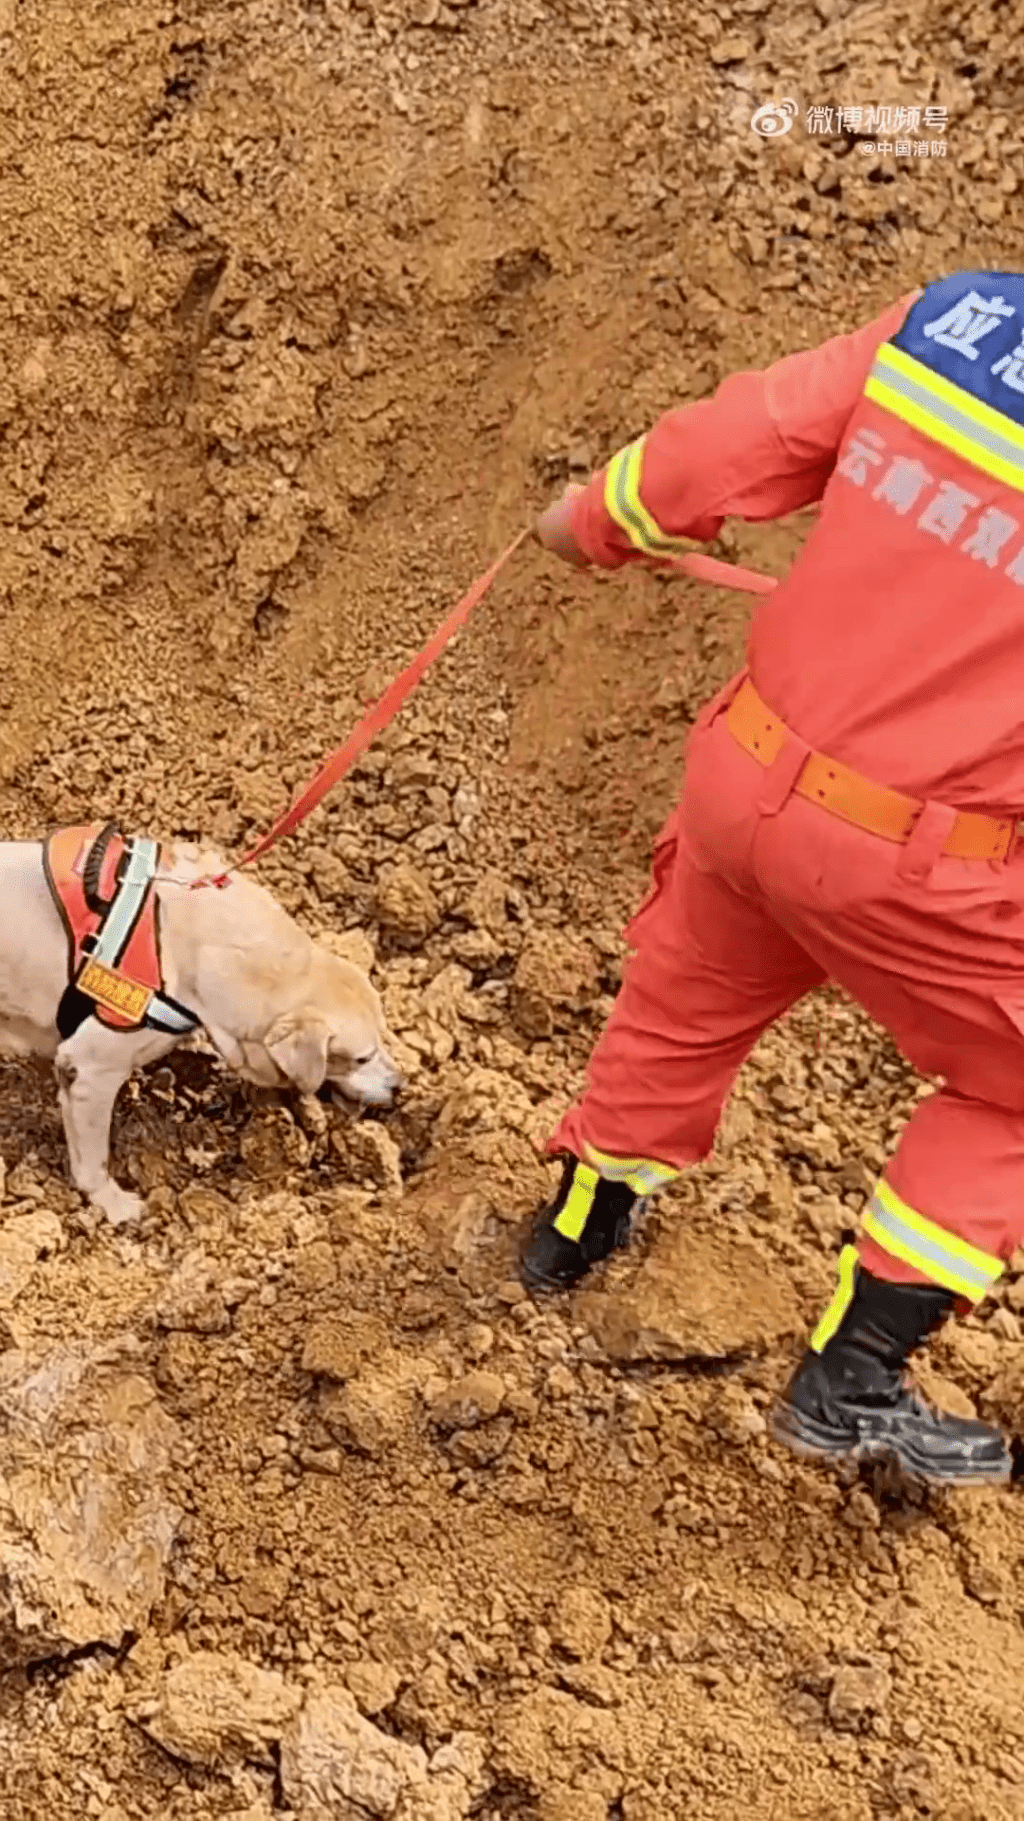 消防员出动搜救犬搜寻受困人士。 中国消防